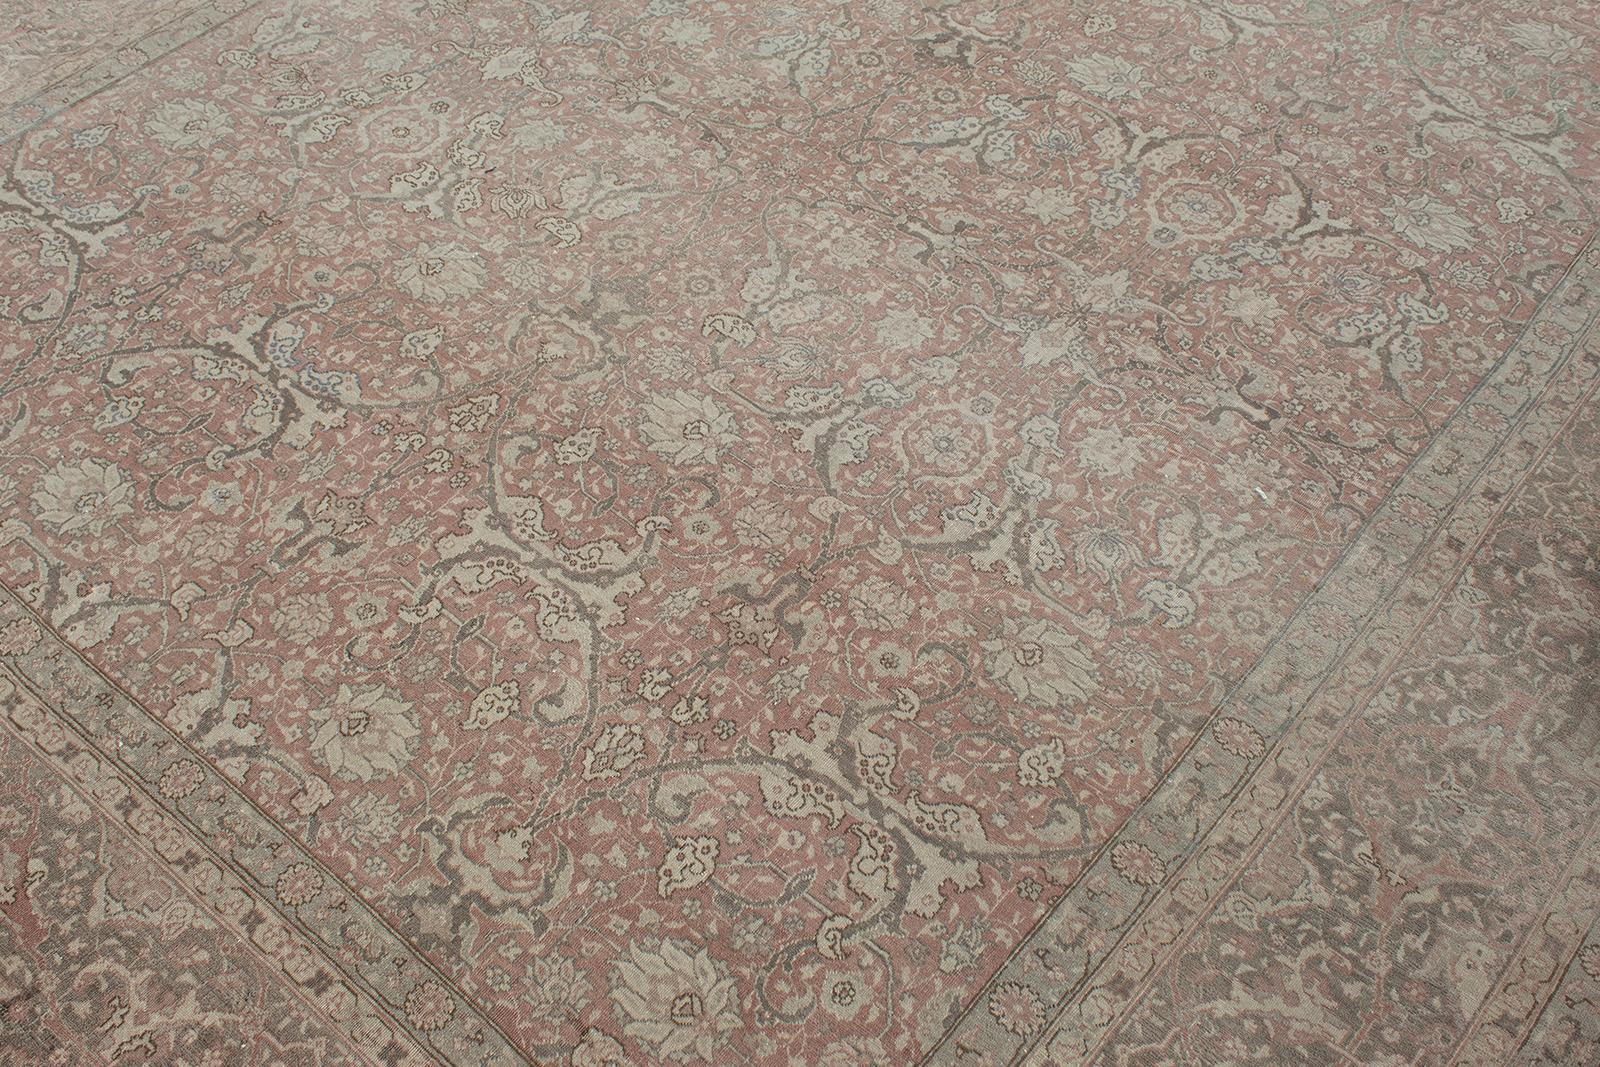 Dieser antike persische Täbriz-Teppich wurde von N A S I R I durch umfangreiche Recherchen und Reisen aufgespürt. Die im Nordwesten des Irans gelegene Stadt Täbris war die früheste Hauptstadt der Safawiden-Dynastie. Sie war länger als jede andere